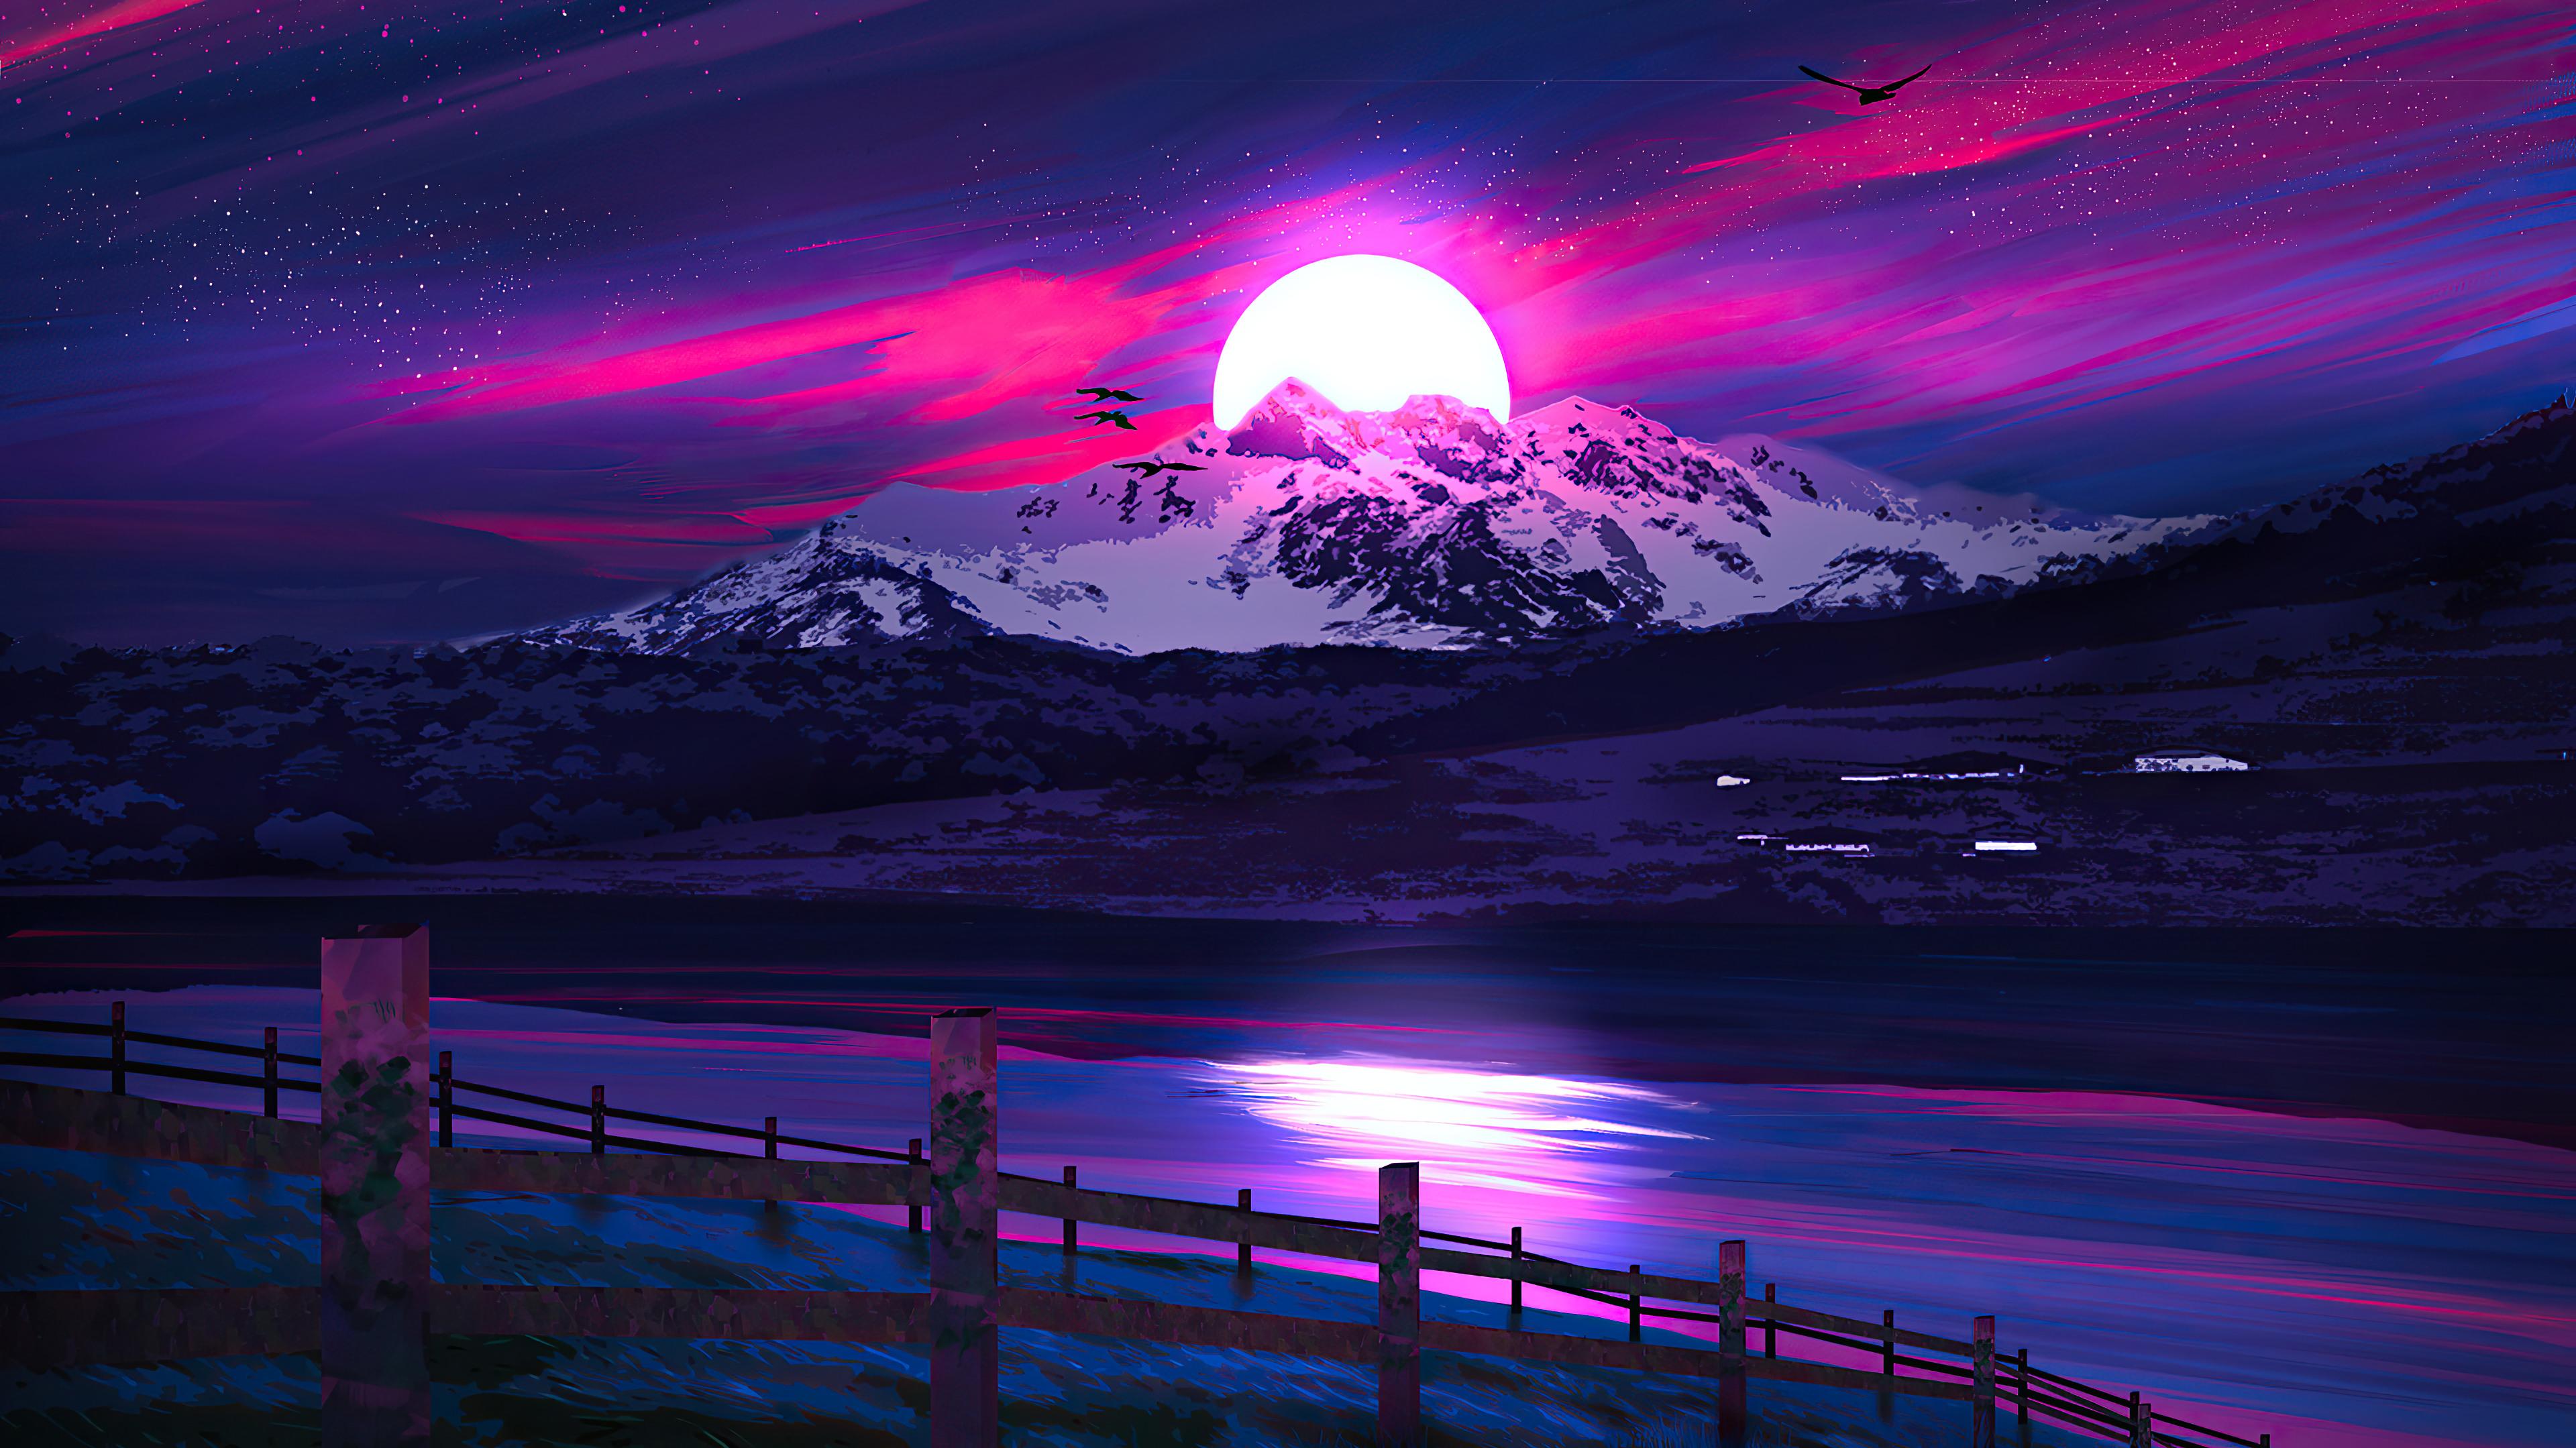 Night Moon Mountain Landscape Digital Art 4k Wallpaper